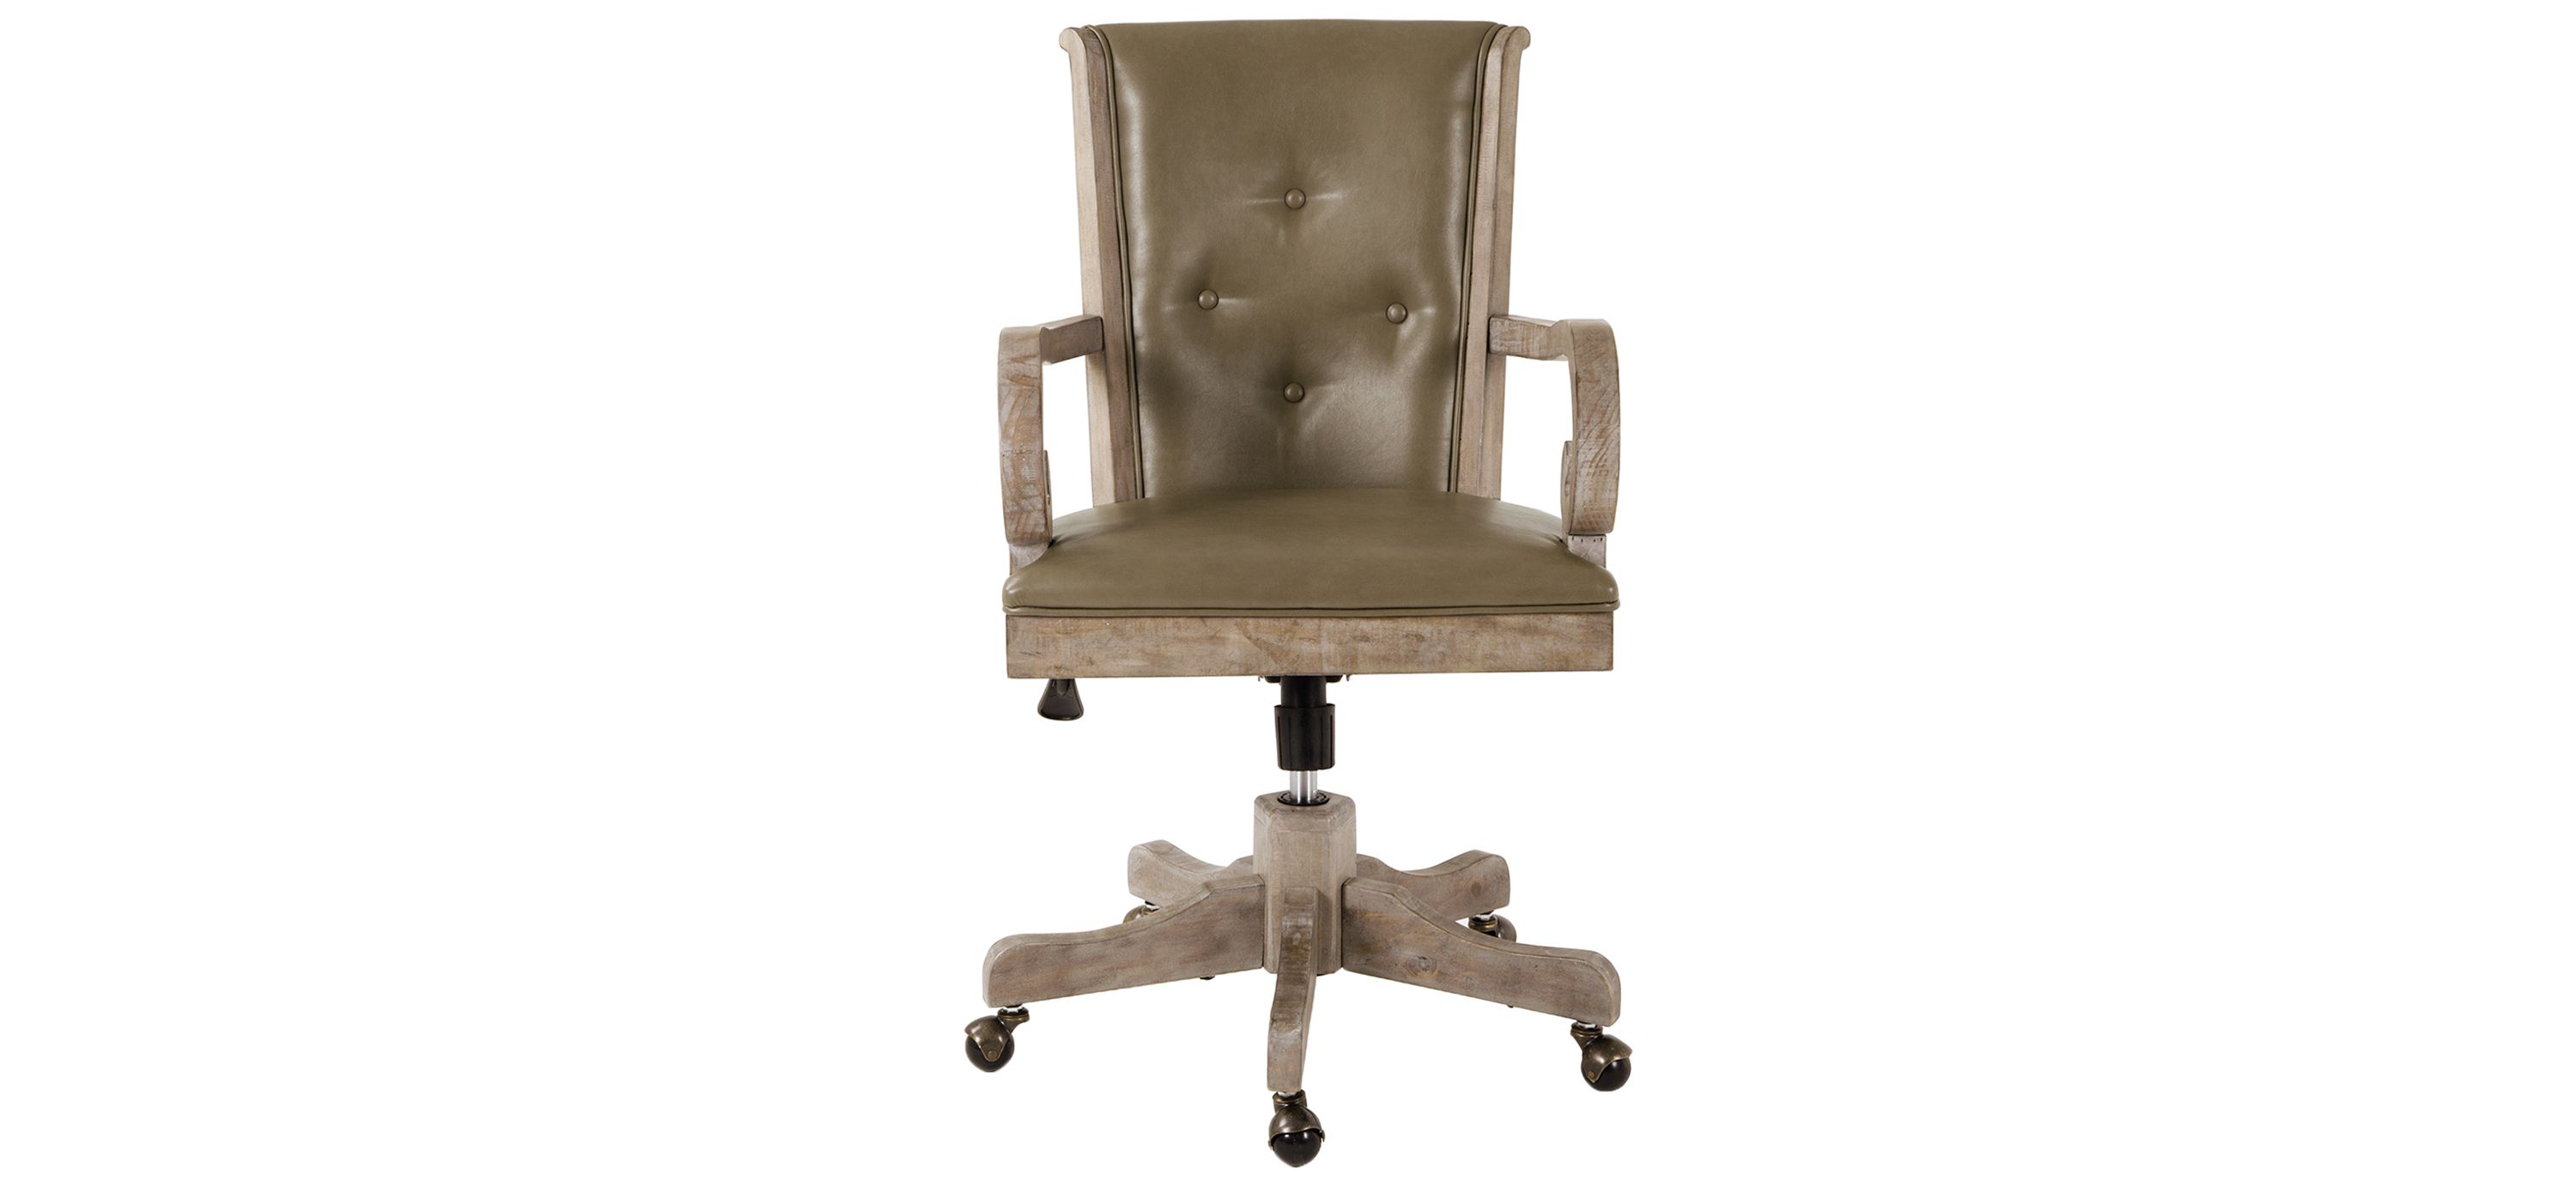 Tinley Park Upholstered Swivel Chair